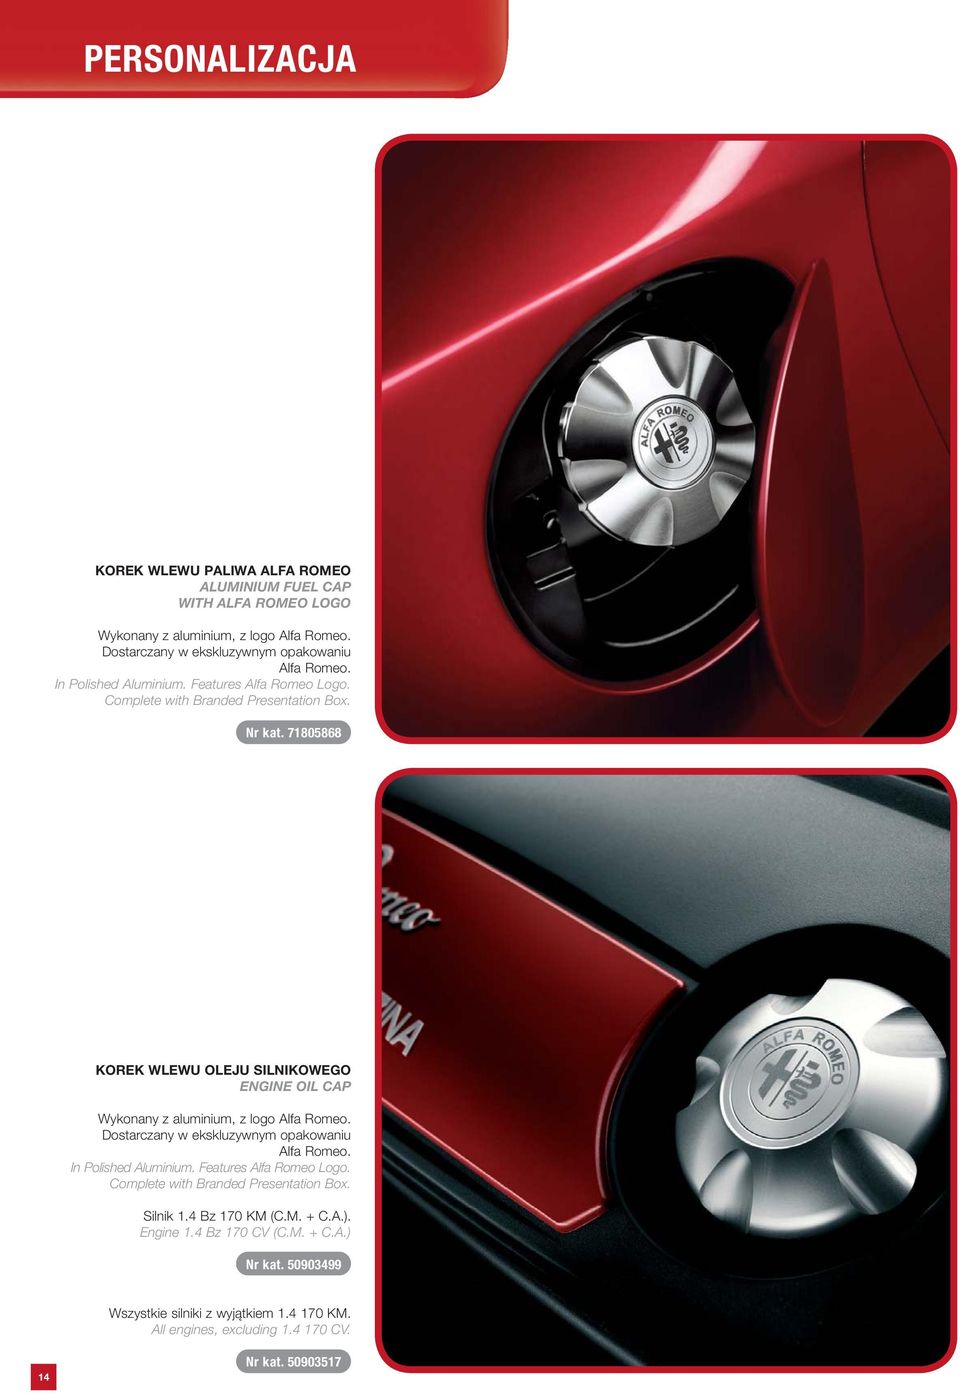 71805868 KOREK WLEWU OLEJU SILNIKOWEGO ENGINE OIL CAP Wykonany z aluminium, z logo Alfa Romeo. Dostarczany w ekskluzywnym opakowaniu Alfa Romeo. In Polished Aluminium.